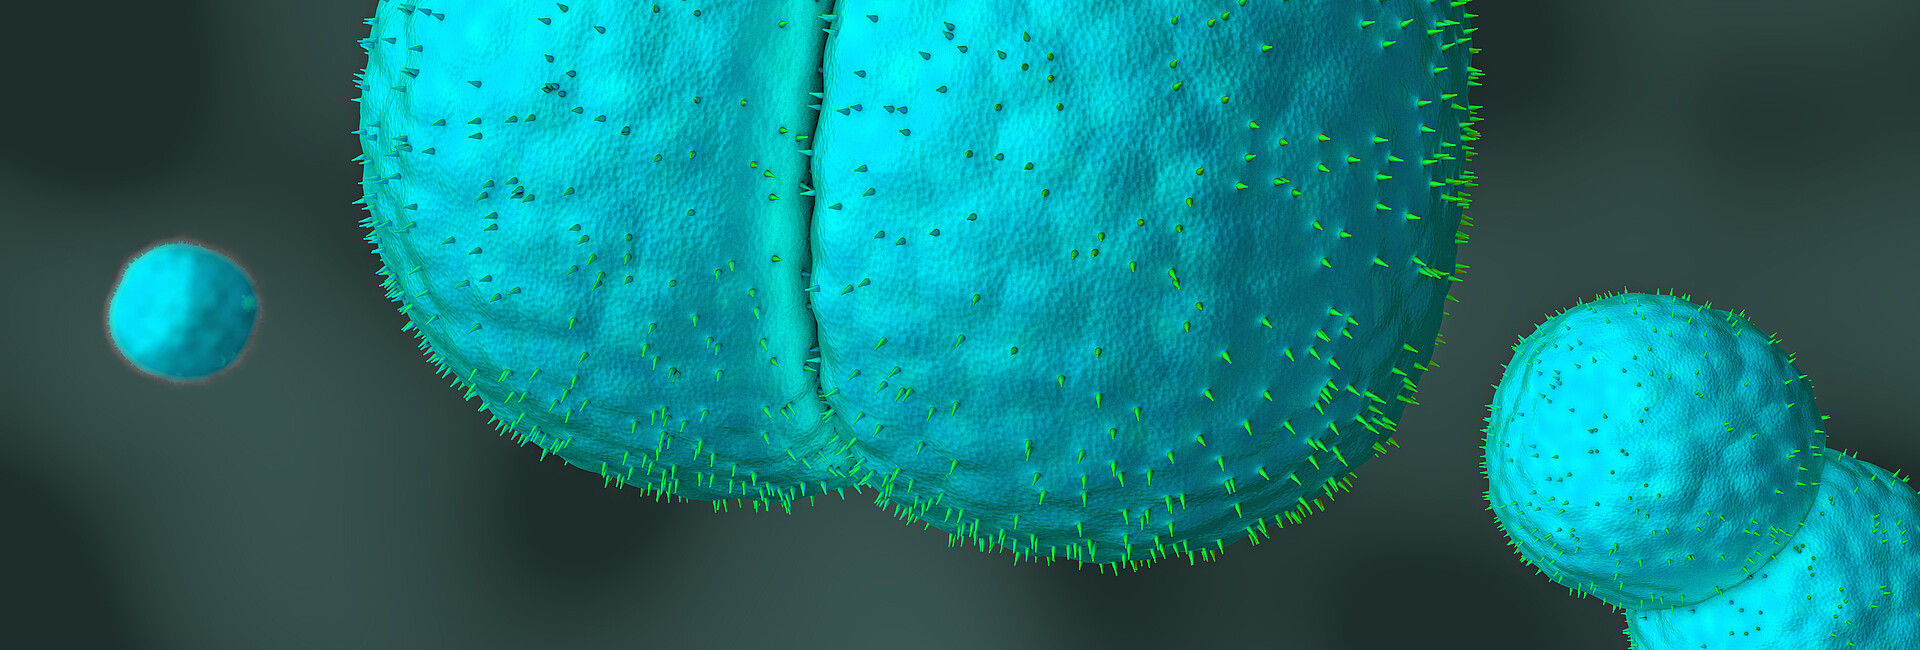 Meningokokken unter dem Mikroskop